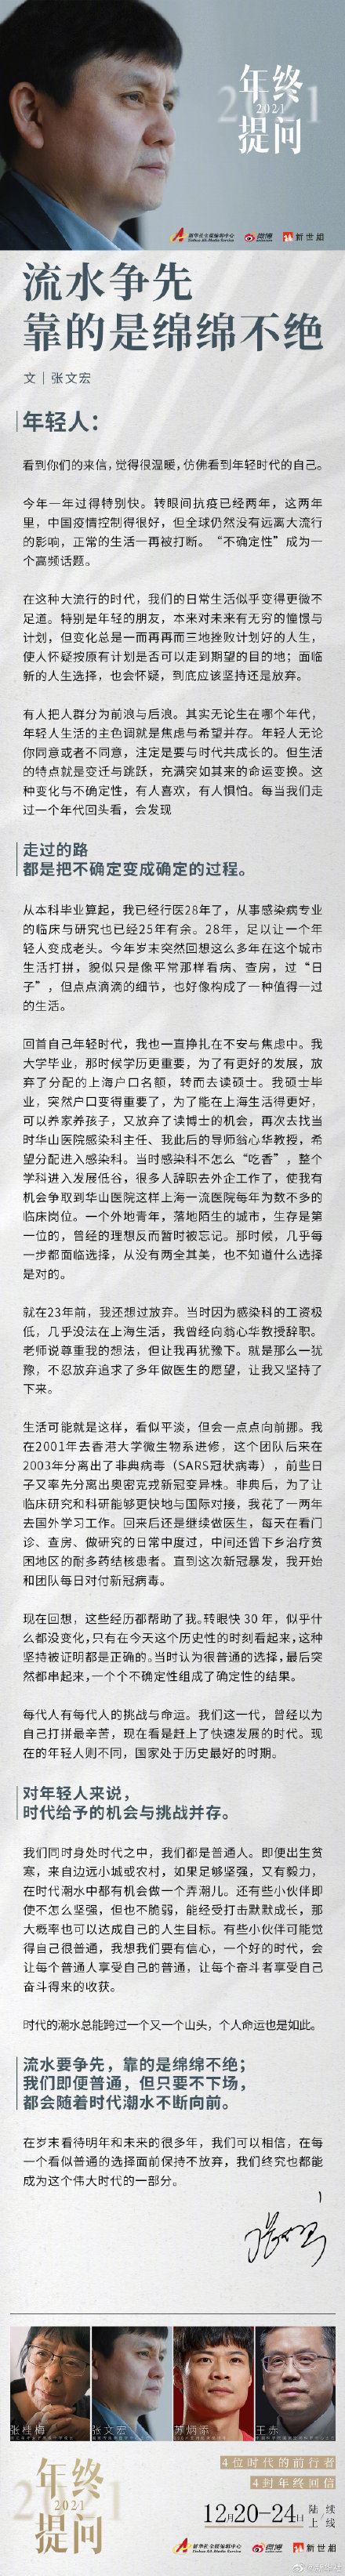 张文宏给年轻人的一封信 张文宏说生活总是焦虑与希望并存